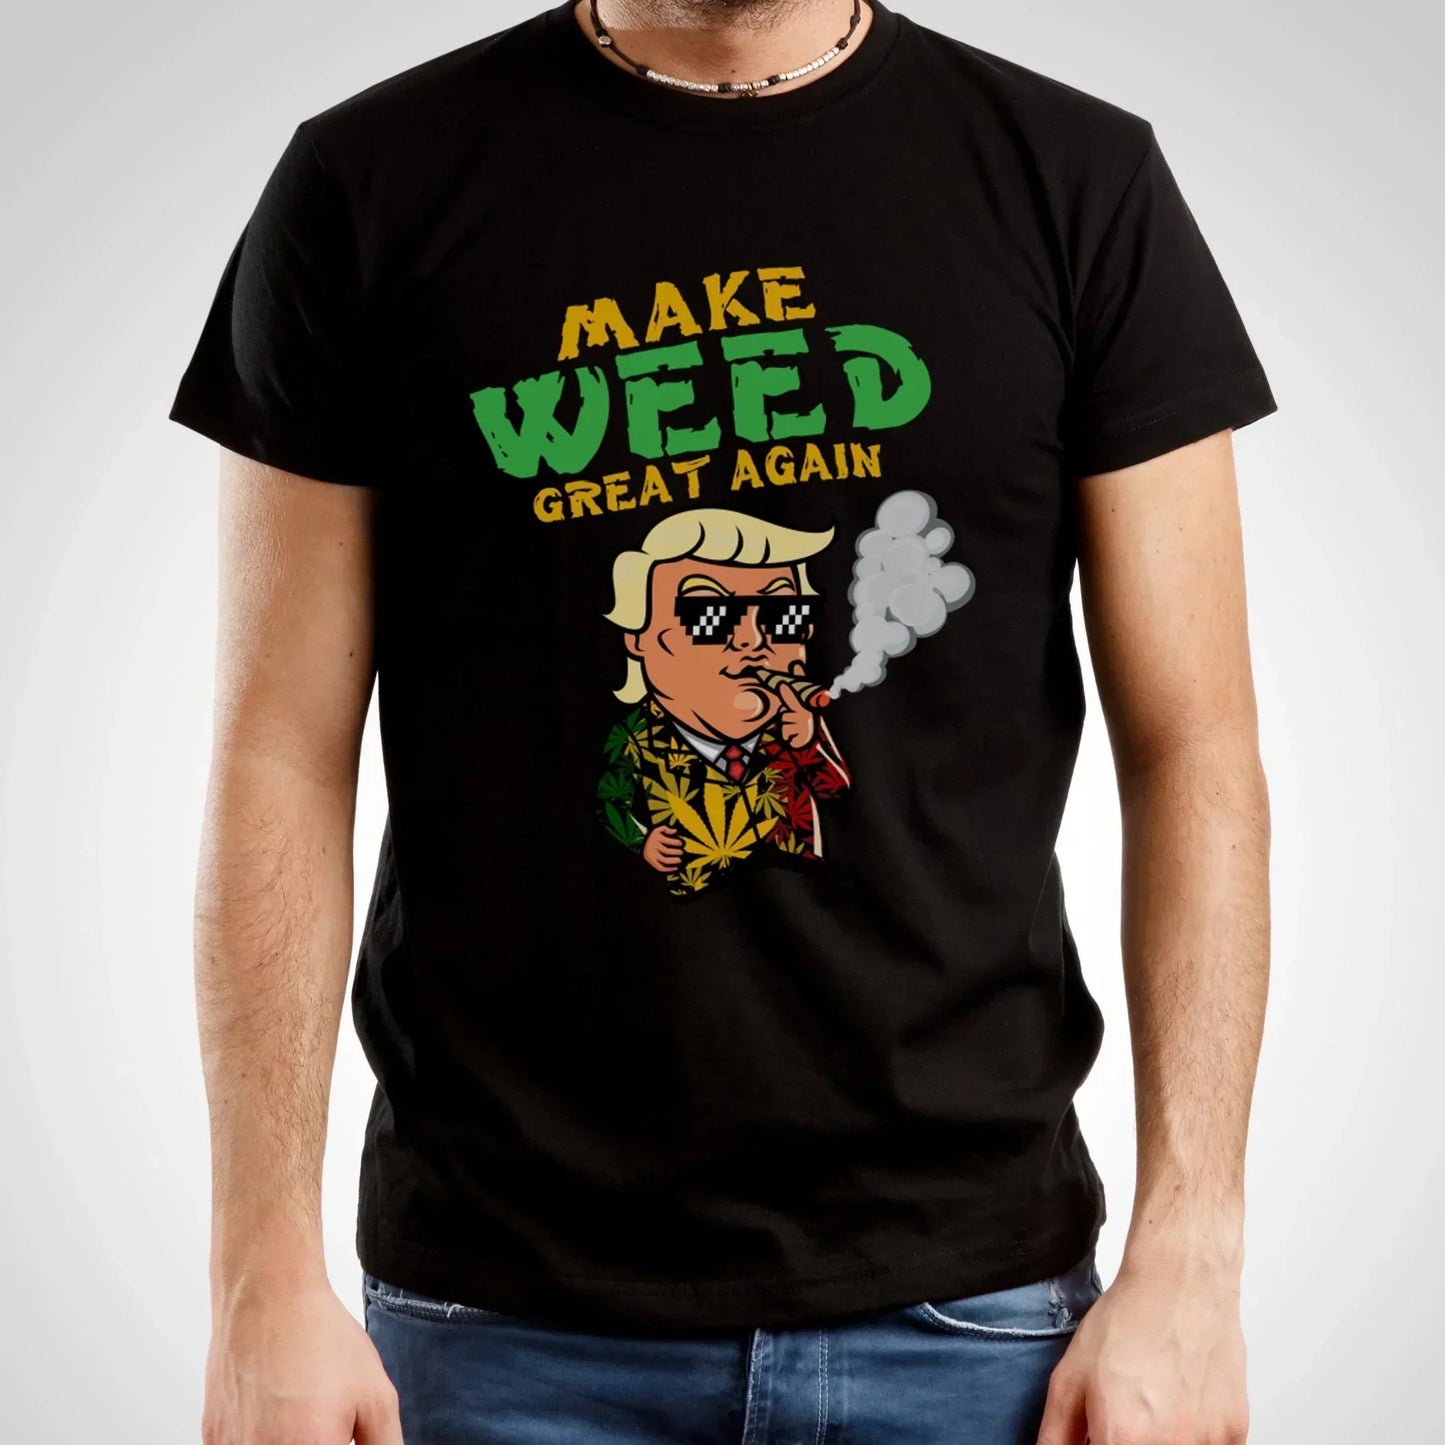 Make Weed Great Again, Funny Trump Shirt HMDesignStudioUS